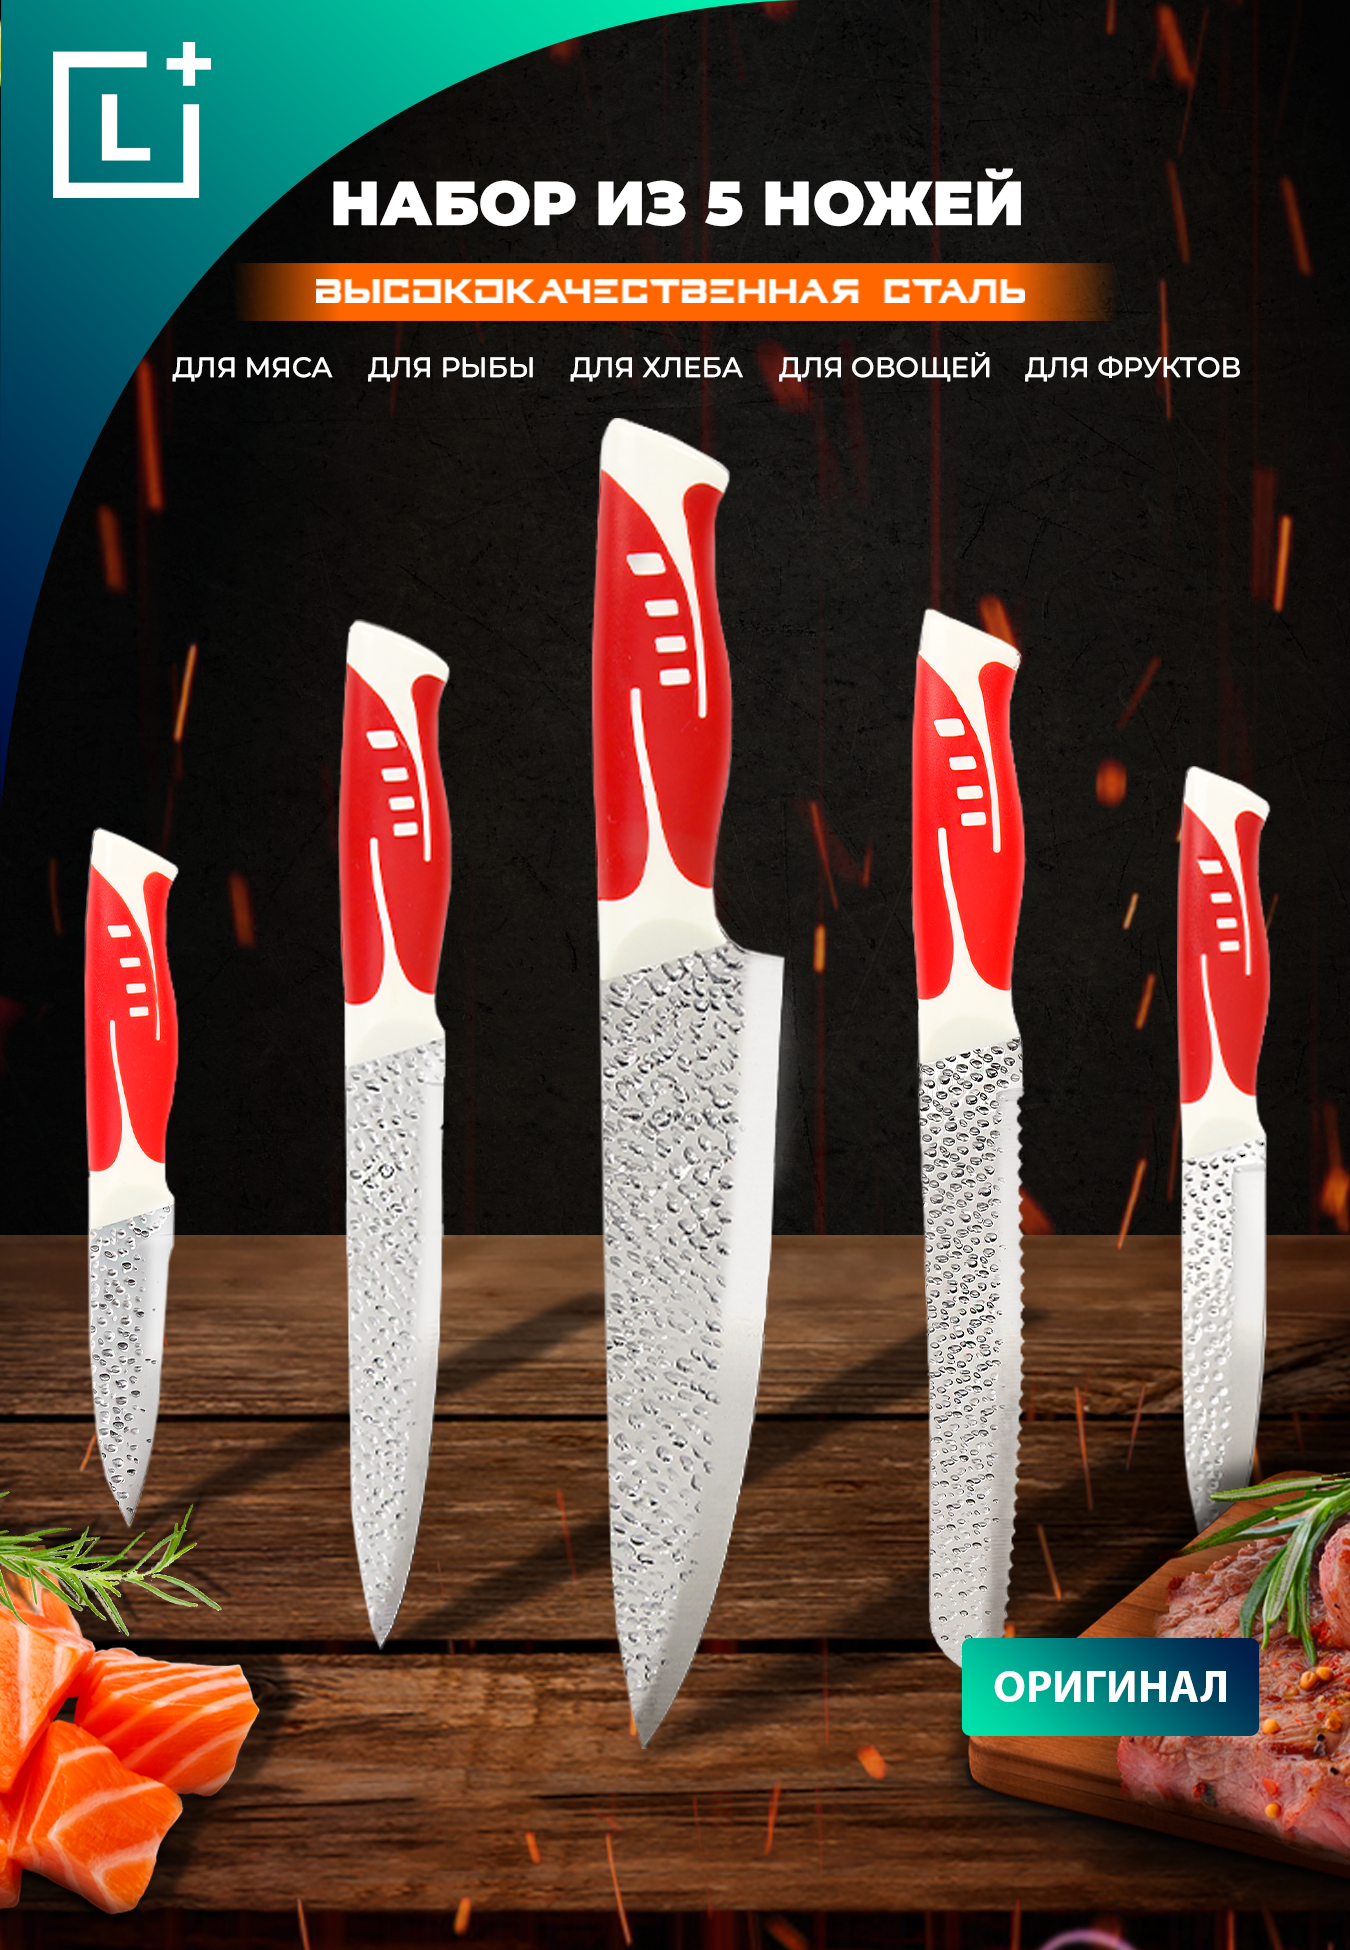 Набор из 5 ножей "Банзай"